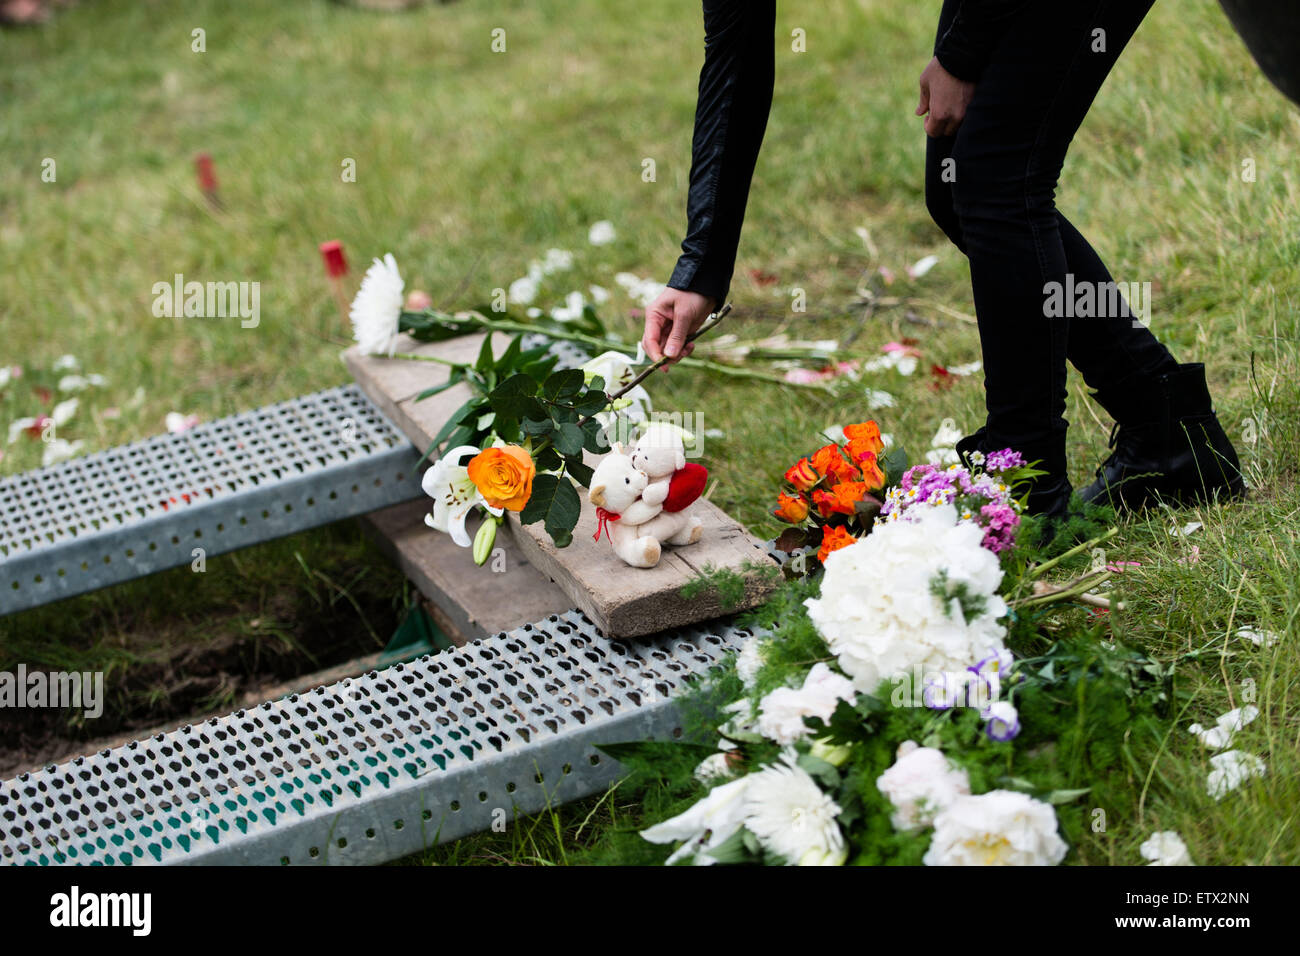 Trauernden legen Blumen auf das Grab einer Frau aus Syrien, die im Mittelmeer in der muslimischen Abschnitt des Friedhofs in Berlin, Deutschland, Berlin-Gatow 16. Juni 2015 ertrunken. Die Beerdigung ist eine Aktion von "Zentrum für politische Schönheit" Aktivisten gegen die EU Flüchtlingspolitik protestieren organisiert. Die Frau Hinterbliebenen, die in Deutschland leben und vereinbart, die Aktion waren nicht anwesend. Im Gegensatz zu den Aktivisten Erklärung wird die Frau Kind, die auch im Flug ertrunken, nicht mit ihr begraben werden. Nach Angaben von Aktivisten waren beide an Bord eines Schiffes, es Stockfoto